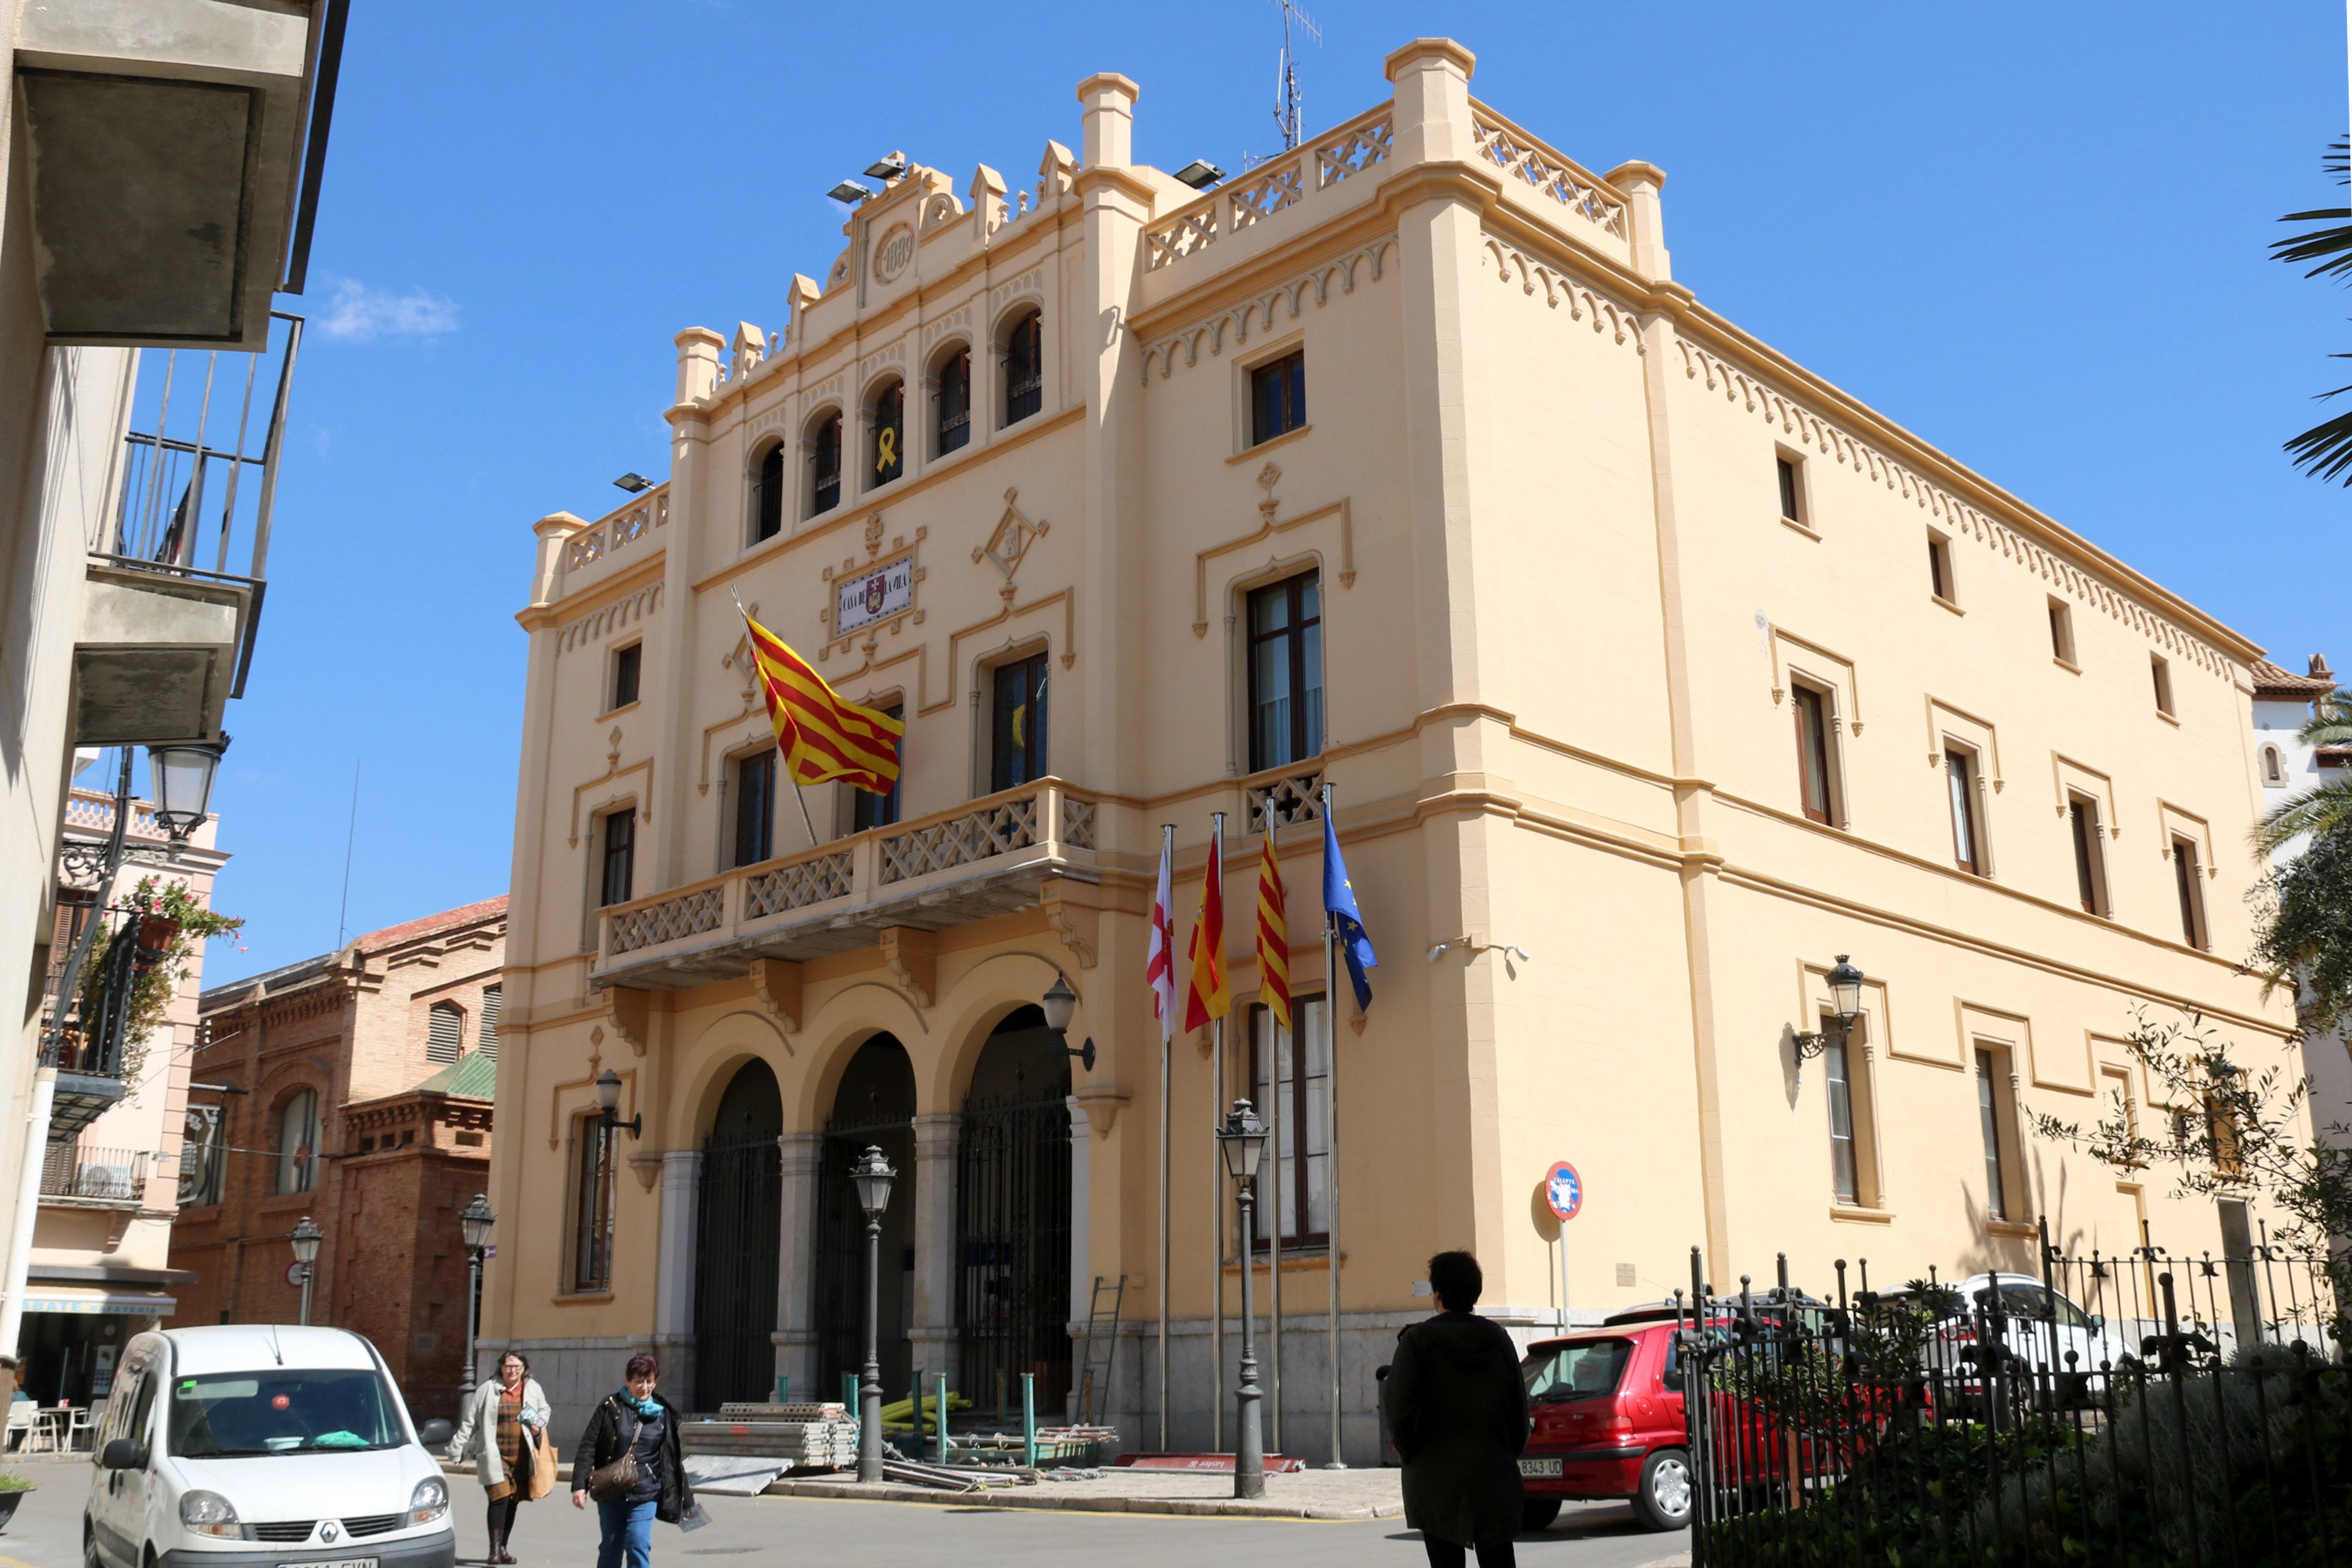 La Junta Electoral insta al Ayuntamiento de Sitges a retirar los lazos amarillos